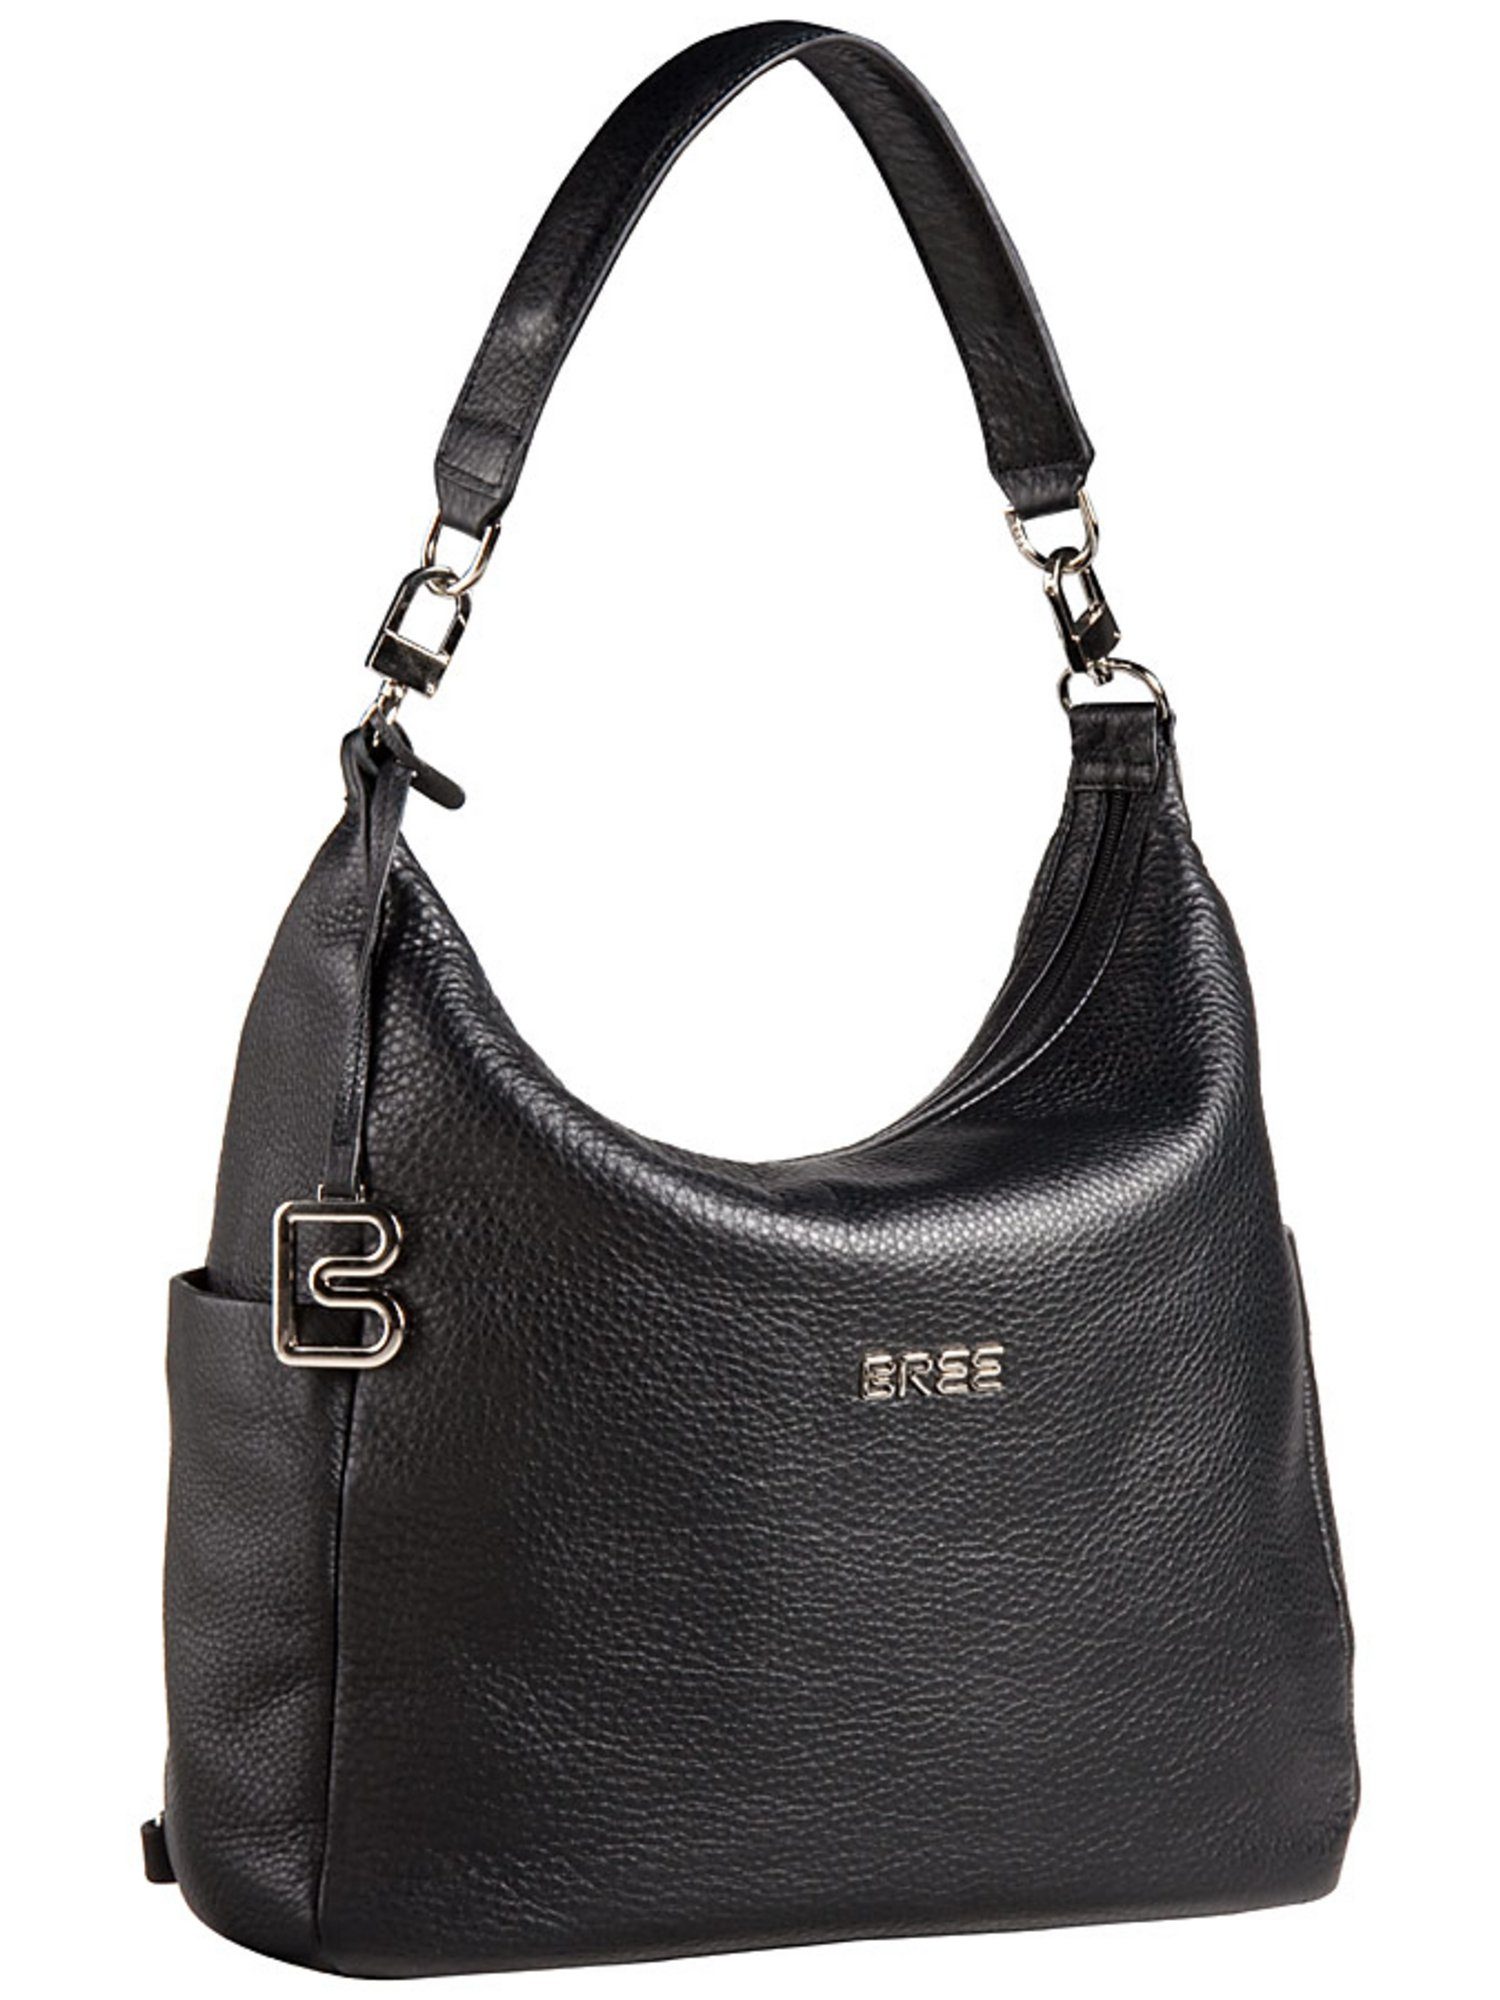 Damen Handtaschen BREE Handtasche Nola 6, Beuteltasche / Hobo Bag